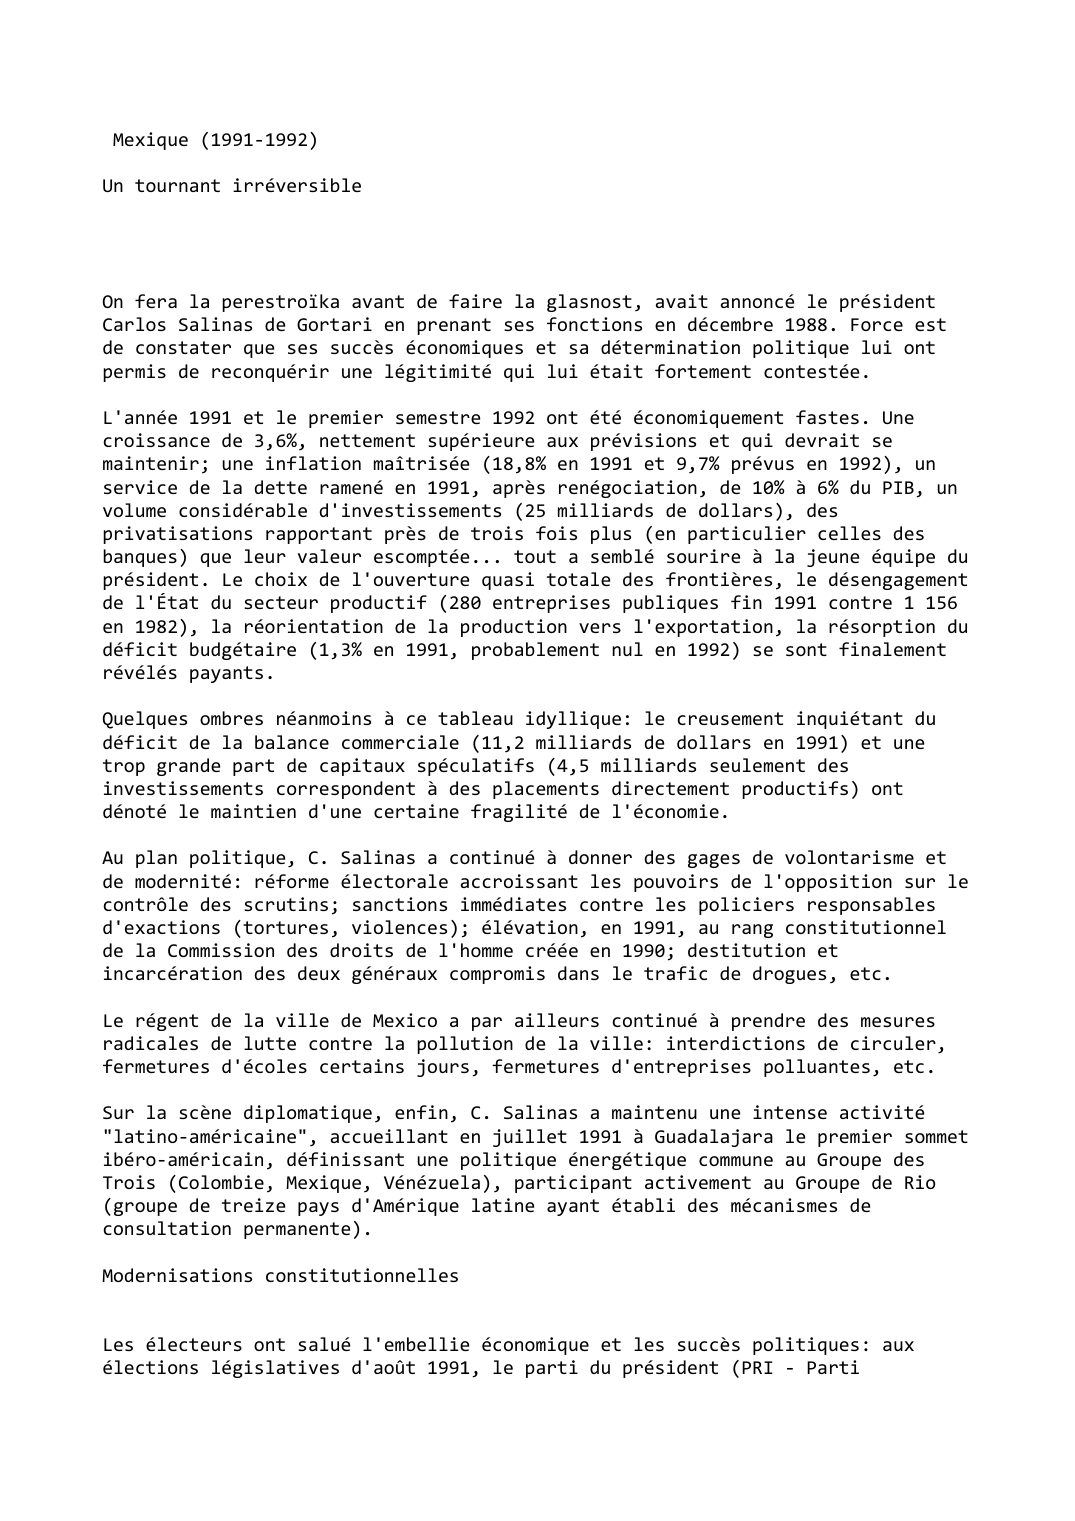 Prévisualisation du document Mexique (1991-1992)

Un tournant irréversible